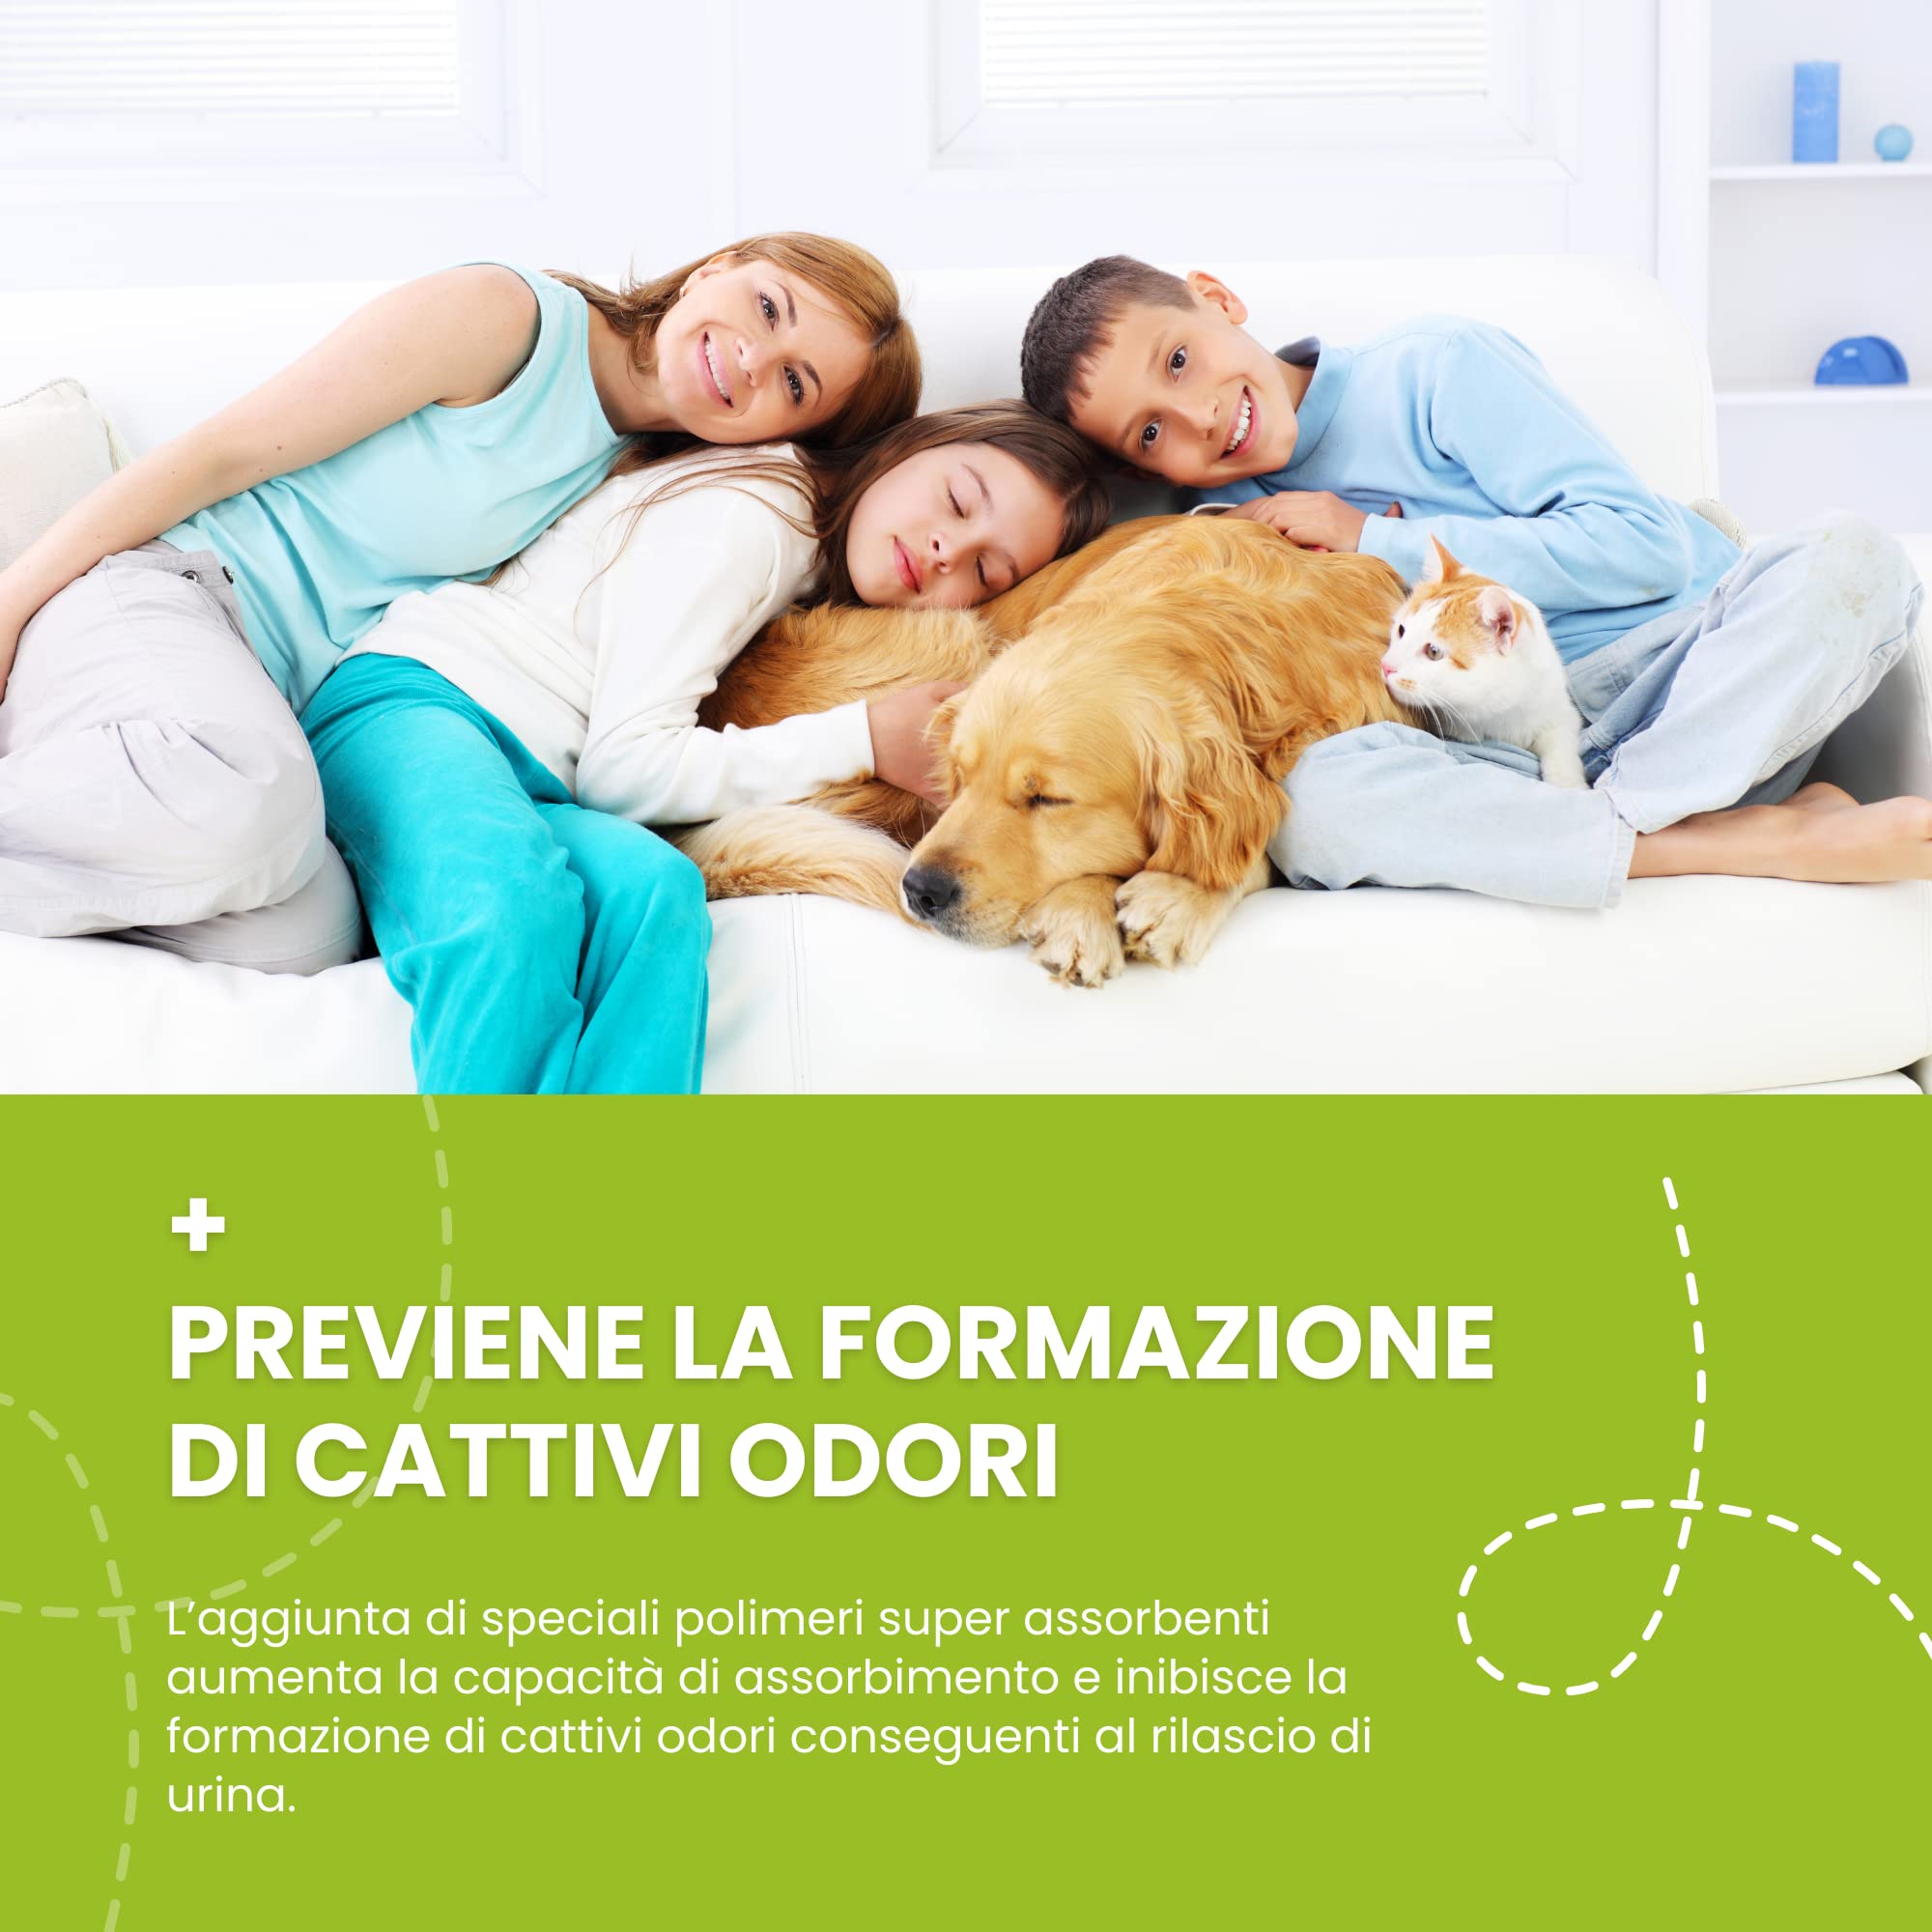 Italian Pet - Traverse per Animali Super Assorbenti - Tappetini Igienici  per Cani e Gatti Multiuso, Neutralizzano Gli Odori - Dimensioni 60x60 cm -  30 Pezzi : .it: Prodotti per animali domestici